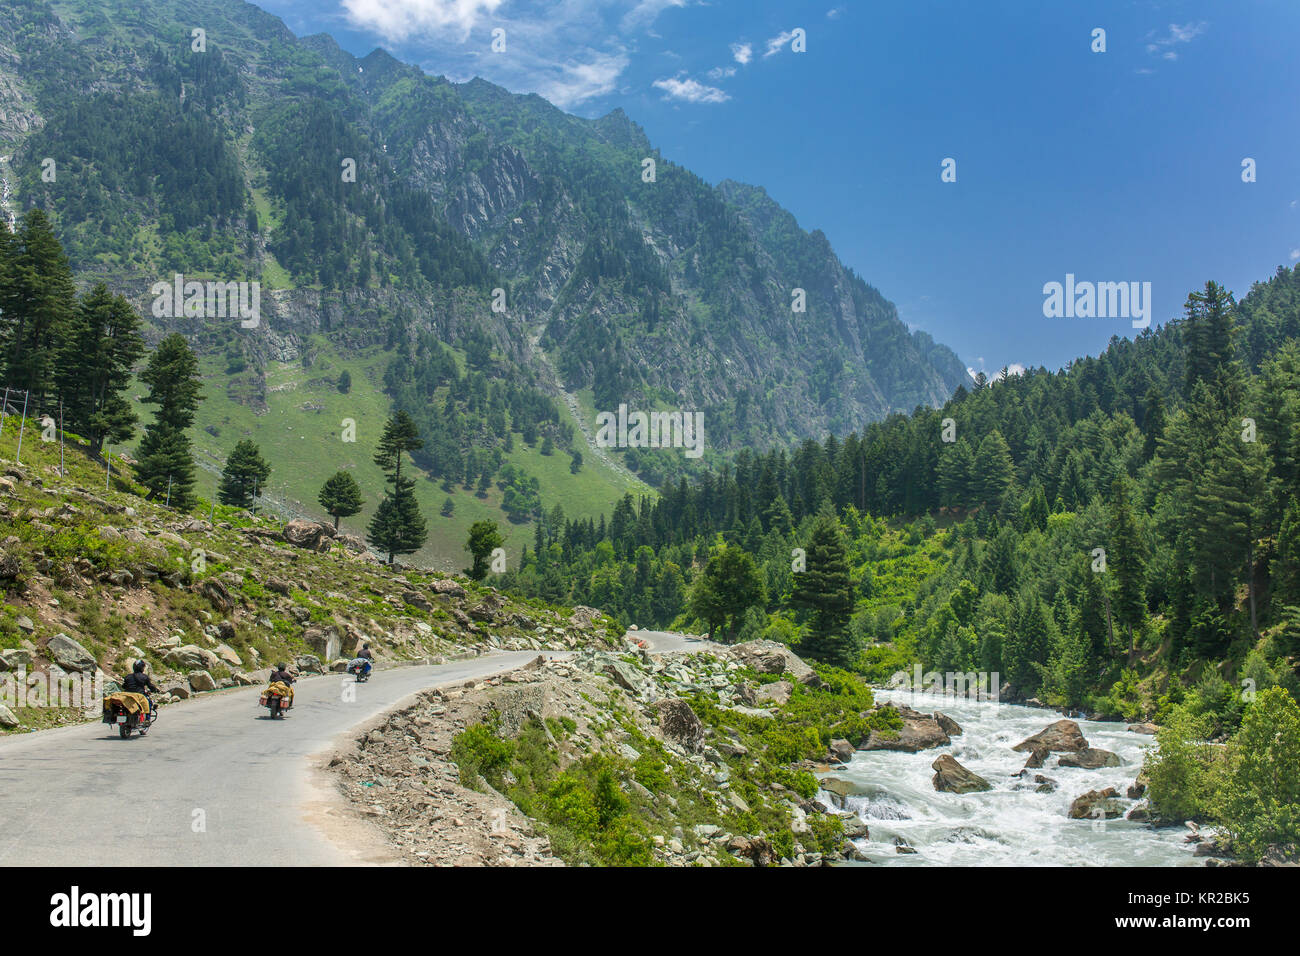 Touristen Motorradfahren im Himalaya-gebirge auf Srinagar - Kargil Straße im Staat Jammu und Kaschmir, Indien. Stockfoto